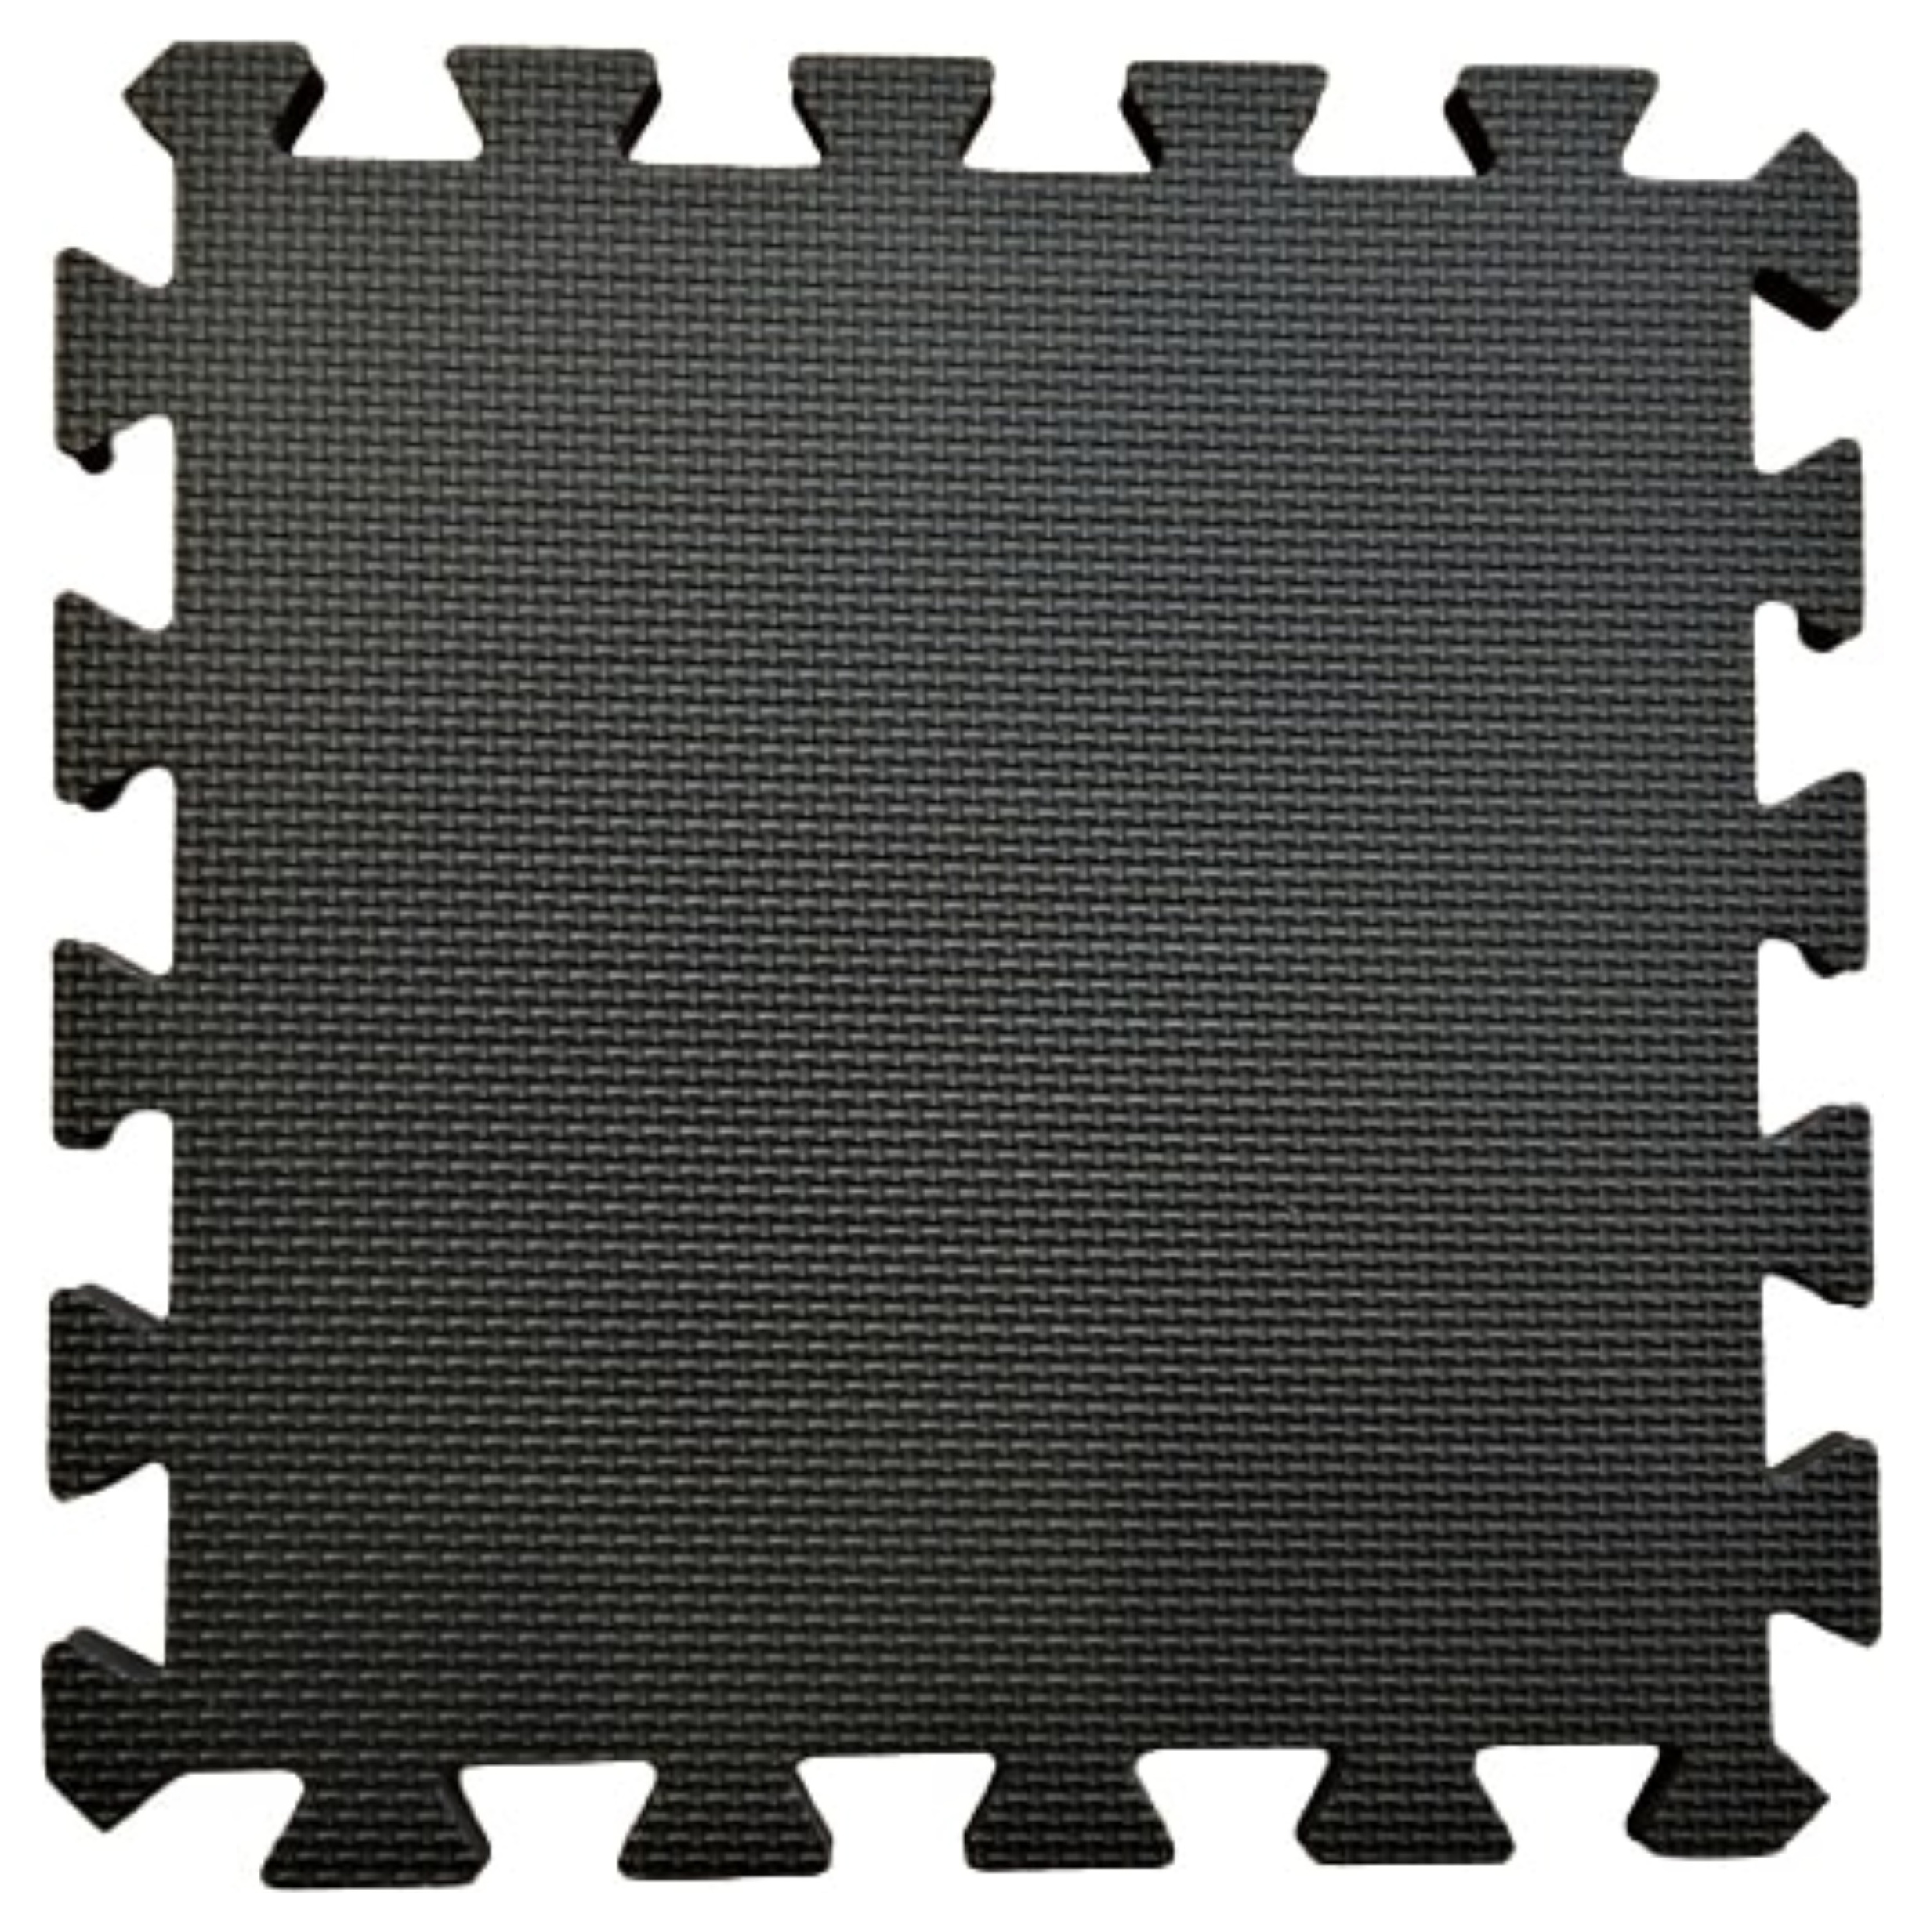 Warm Floor Black Interlocking Floor Tiles for Garden Buildings - 9 x 8ft & 12 x 6ft